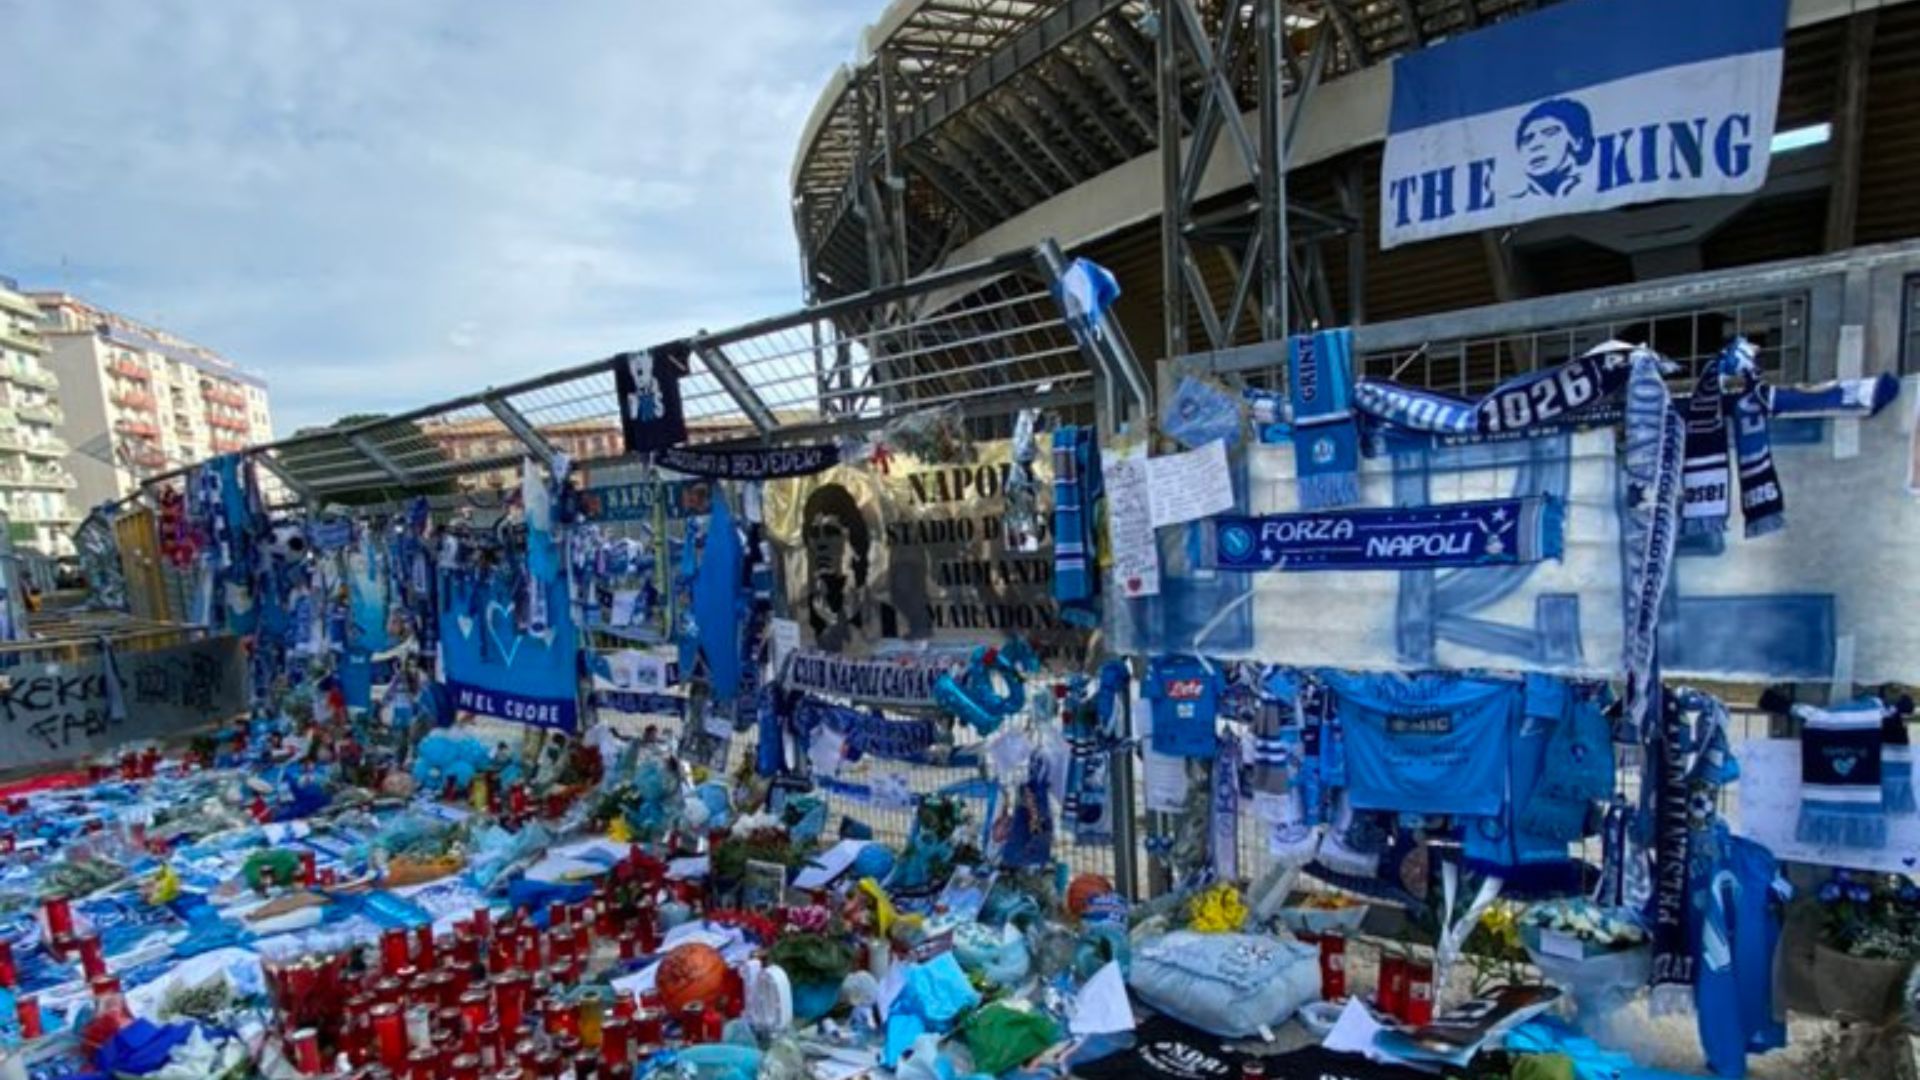 La gente de Nápoles homenajeó a Diego Maradona en las afueras del estadio tras otro aniversario de su muerte. (Foto Prensa Libre: RRSS)